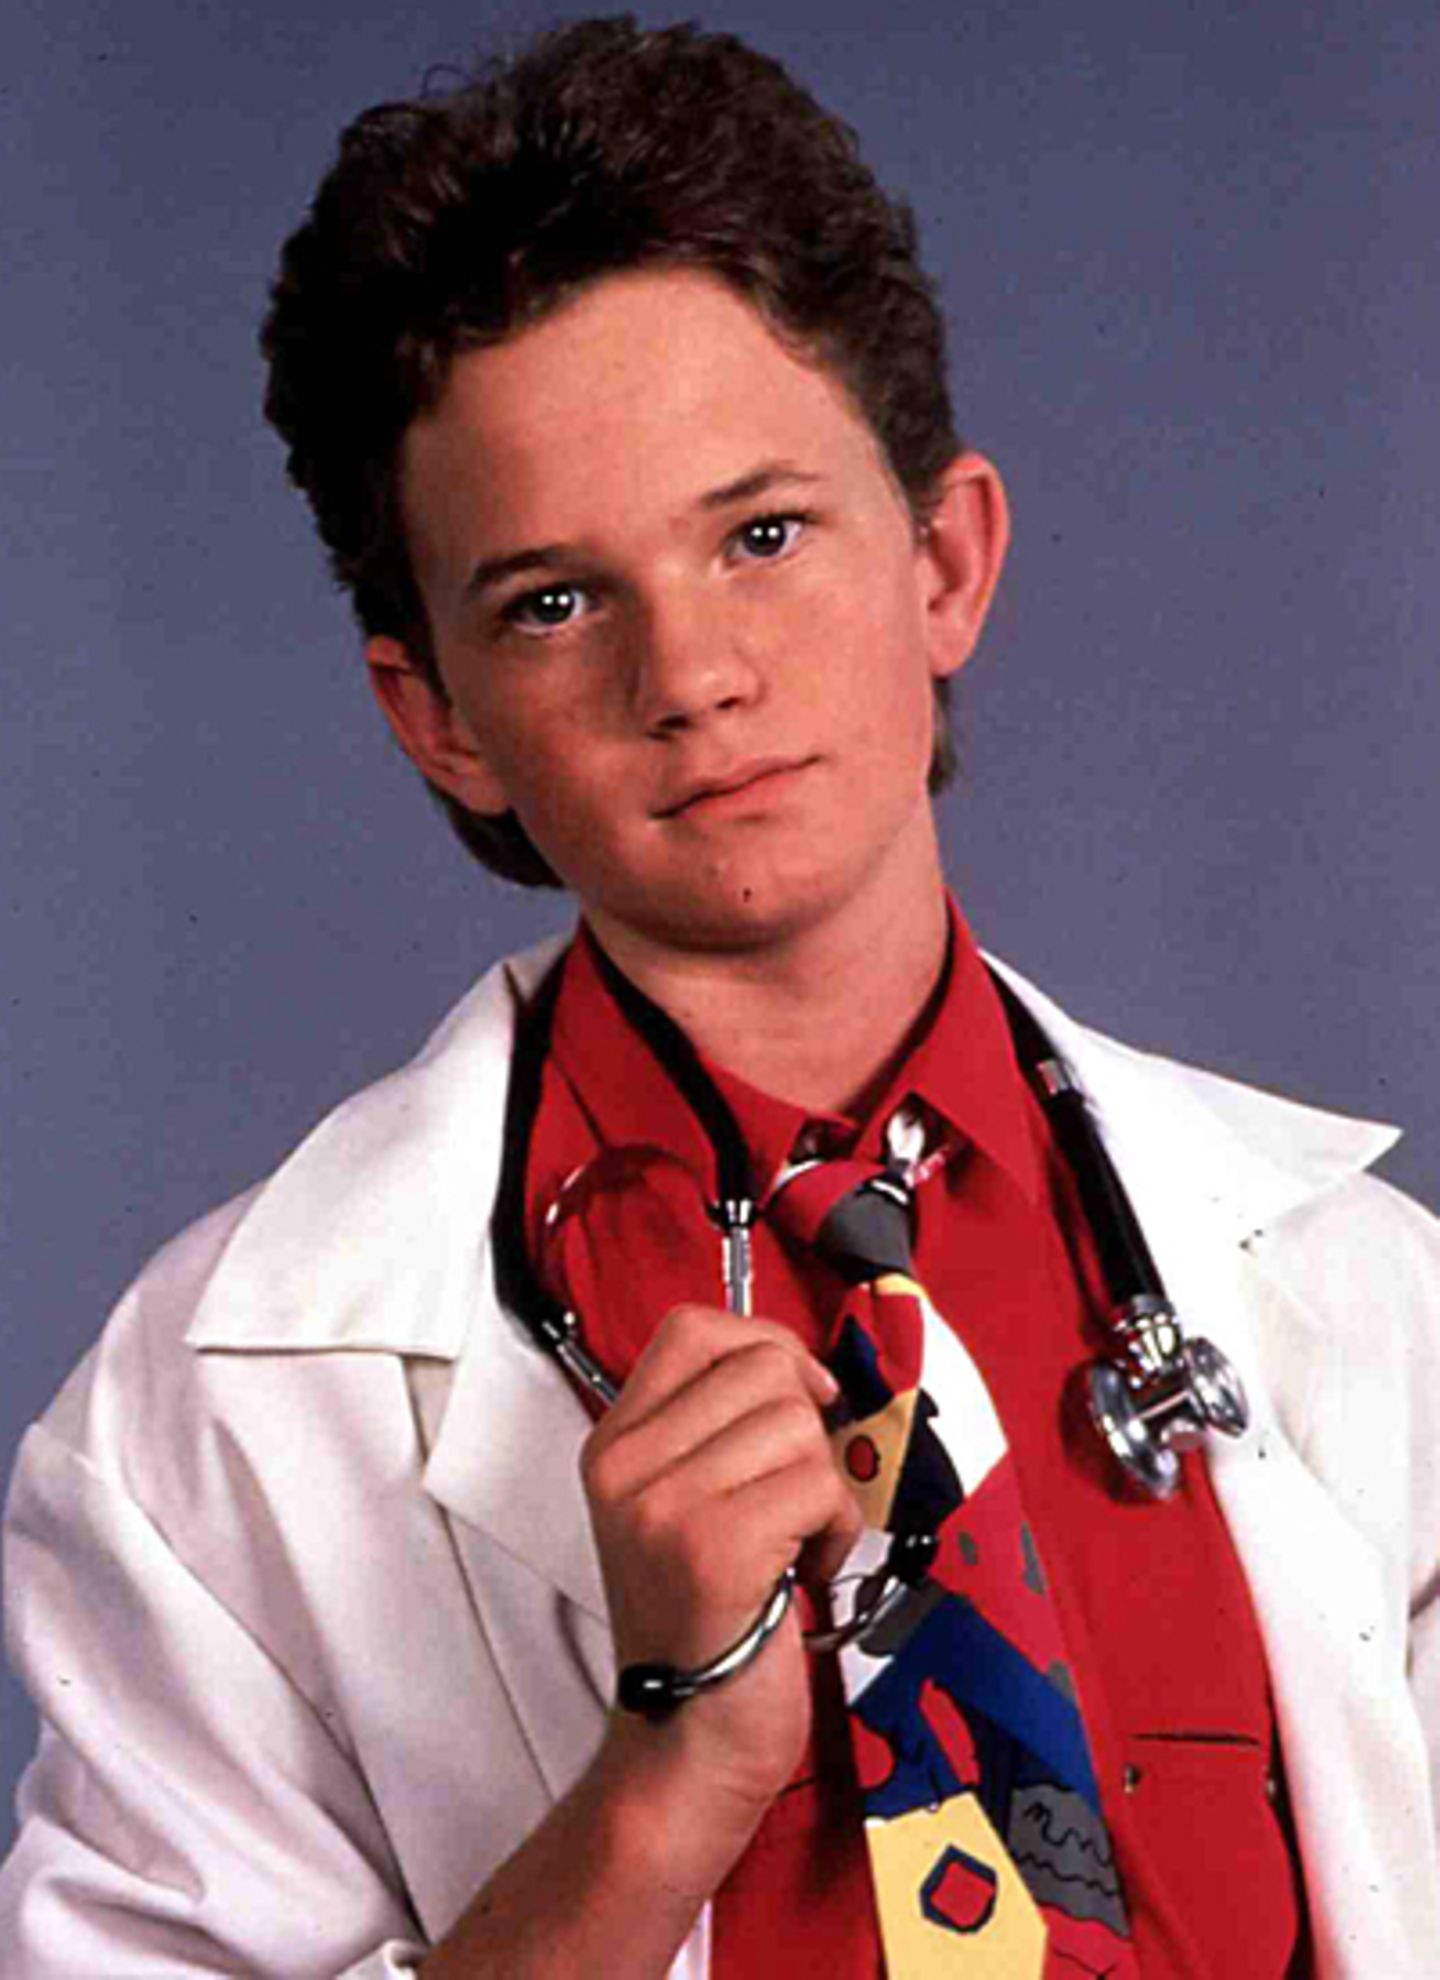 Neil Patrick Harris wurde als "Doogie Howser, M.D." auf dem Bildschirm zum jüngsten Arzt der Welt und zum Kinderstar. Er praktizierte von 1989 bis 1993.